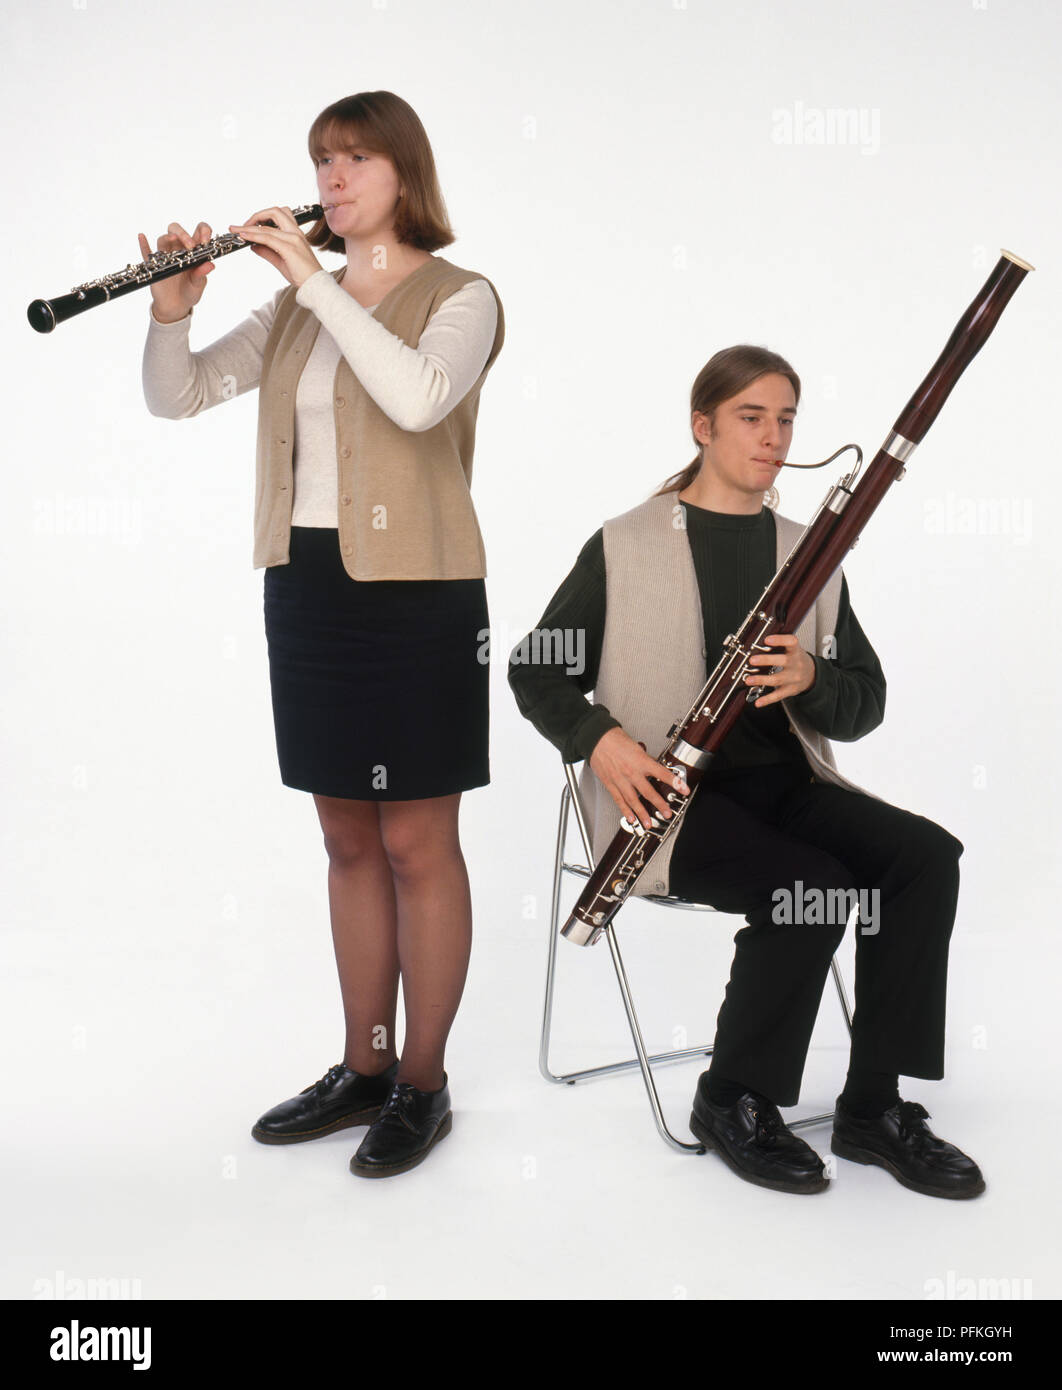 Jugendmädchen spielen Oboe, neben sitzt, Teenager spielen Fagott,  Vorderansicht Stockfotografie - Alamy